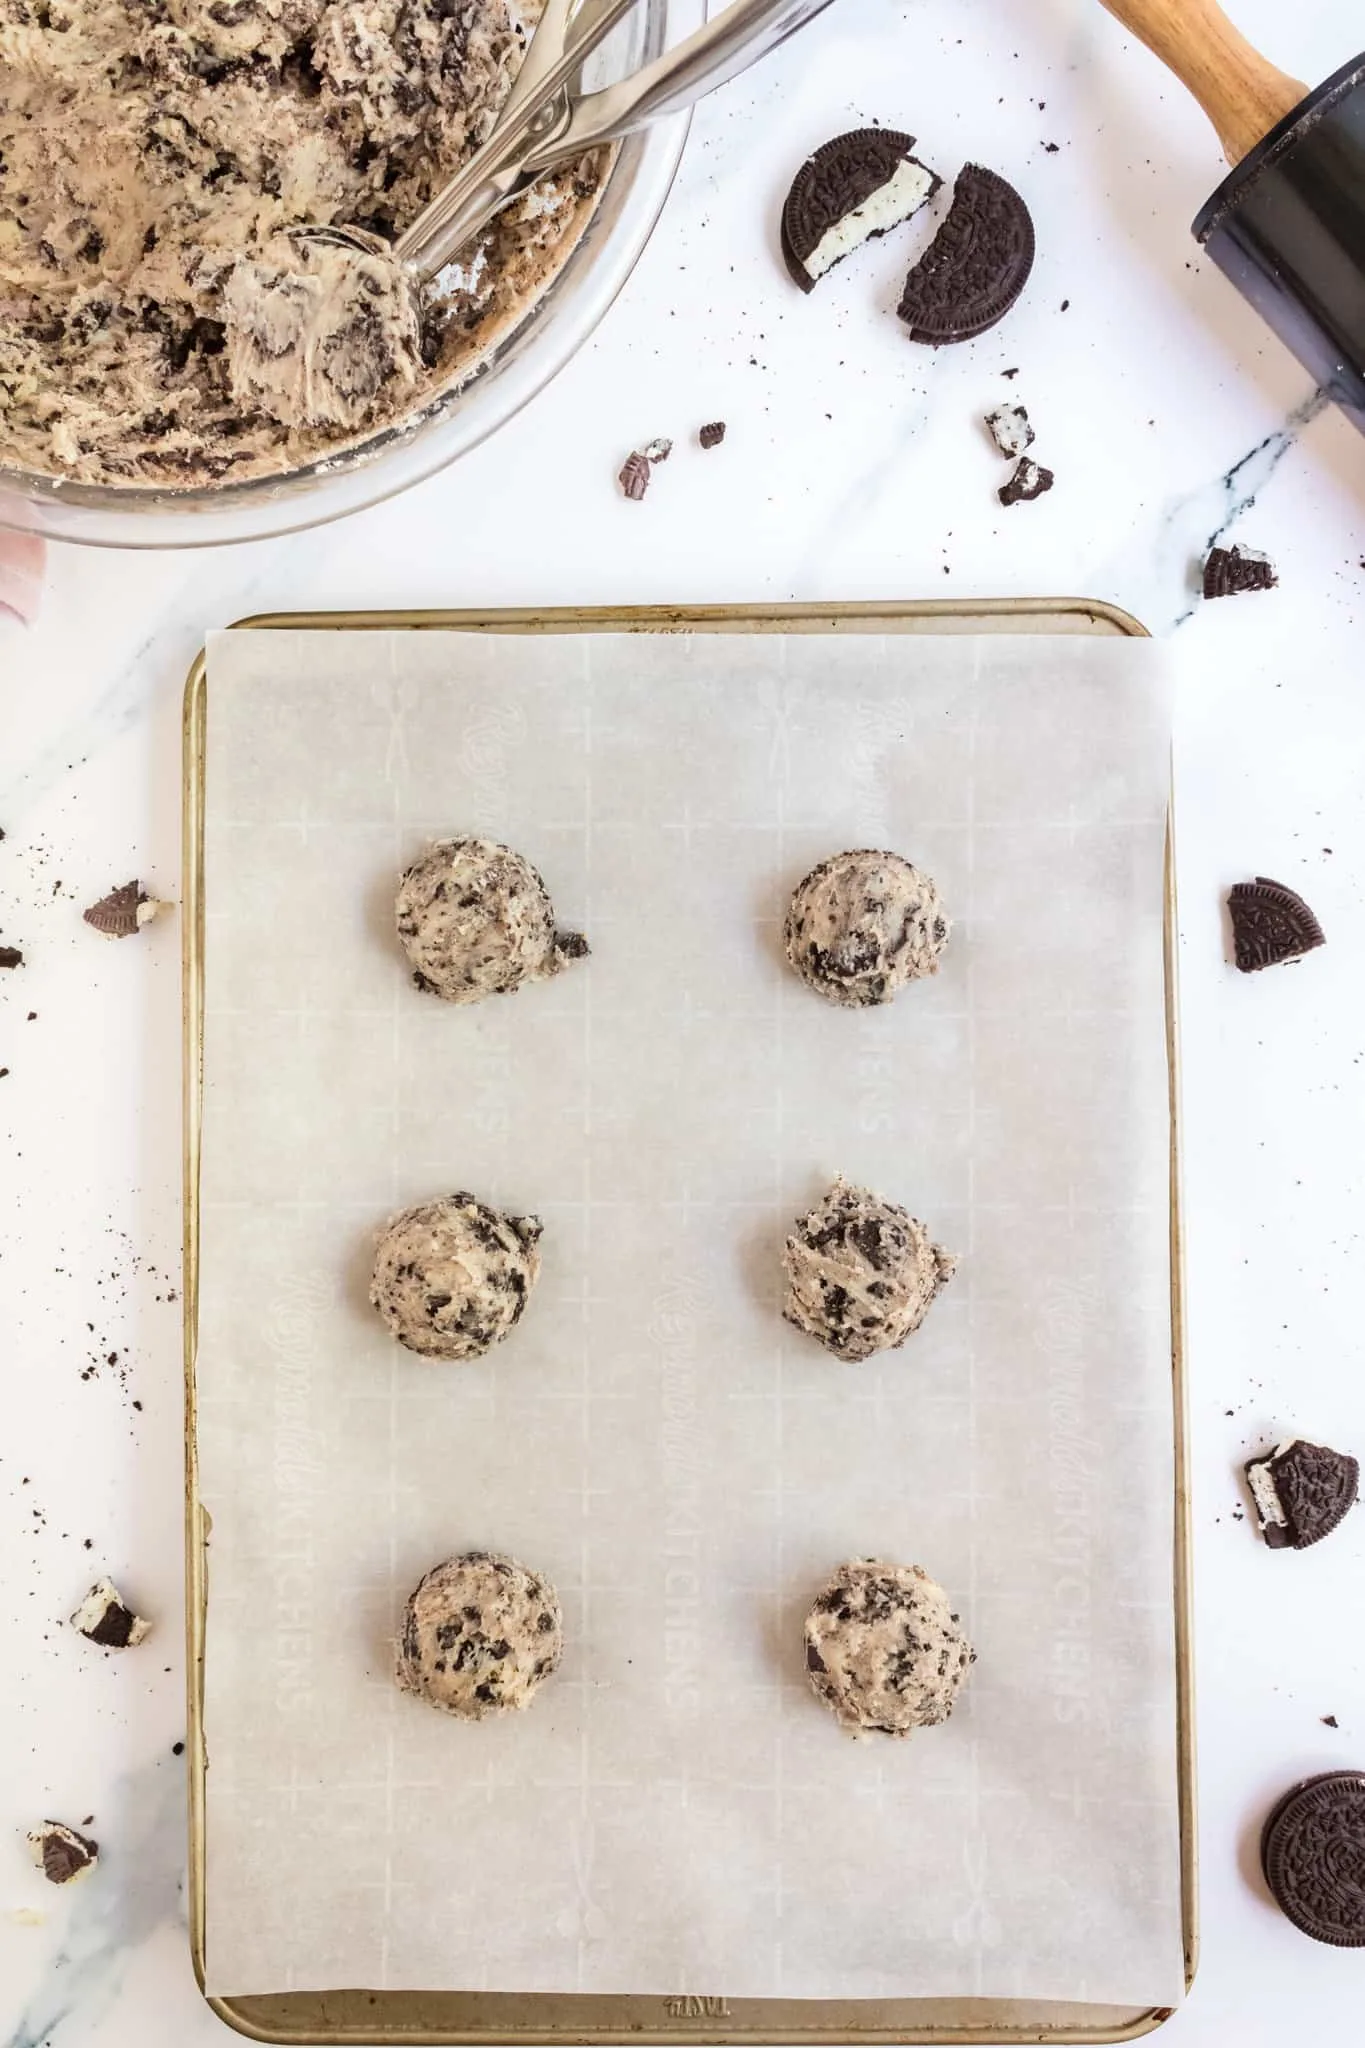 Oreo cheesecake cookie dough balls on a baking sheet